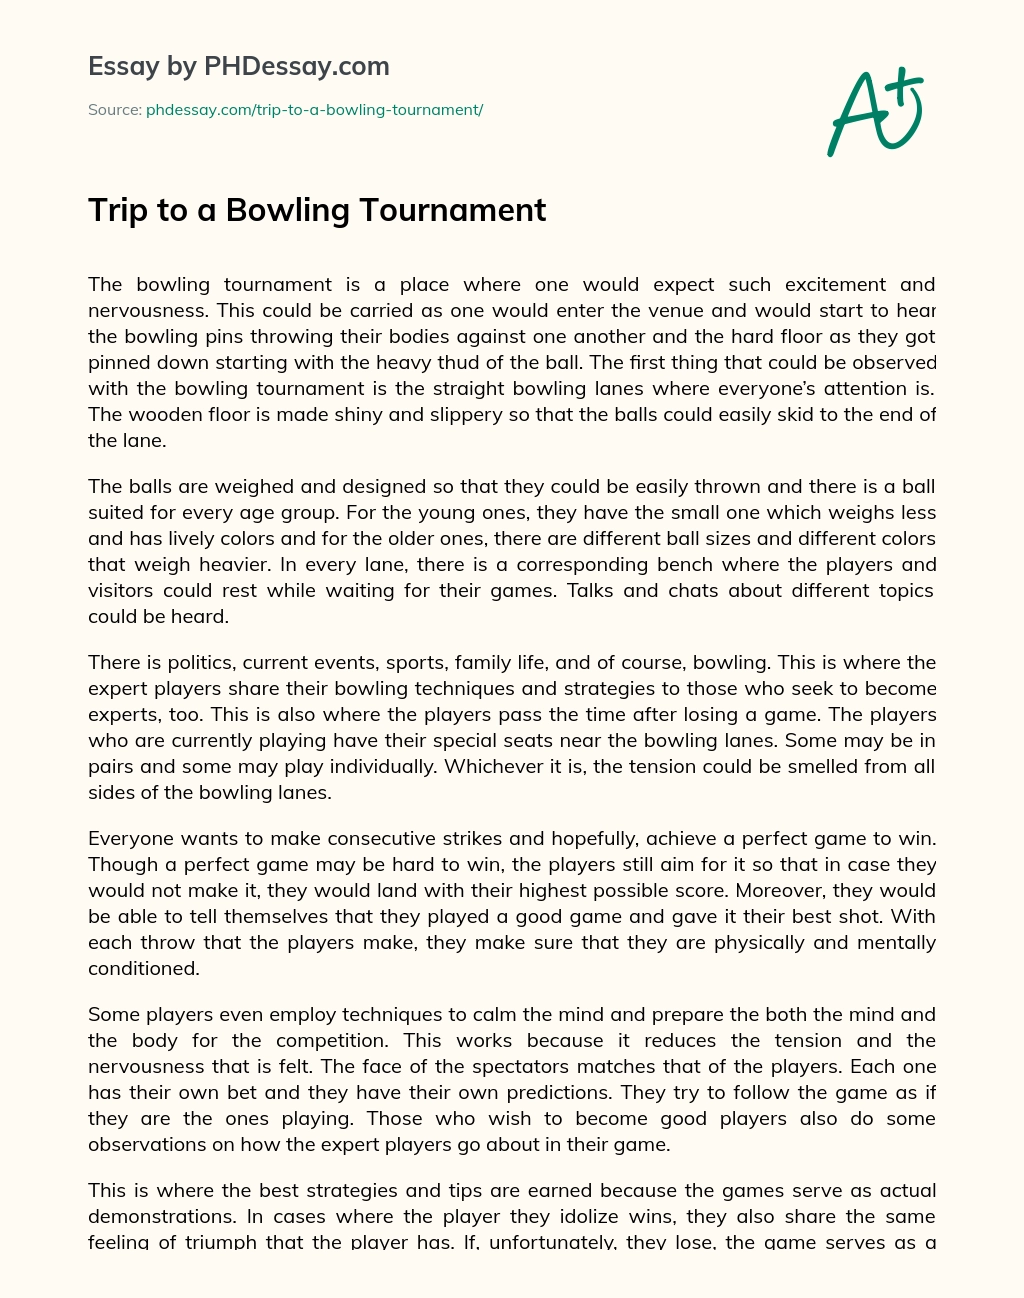 Trip to a Bowling Tournament essay